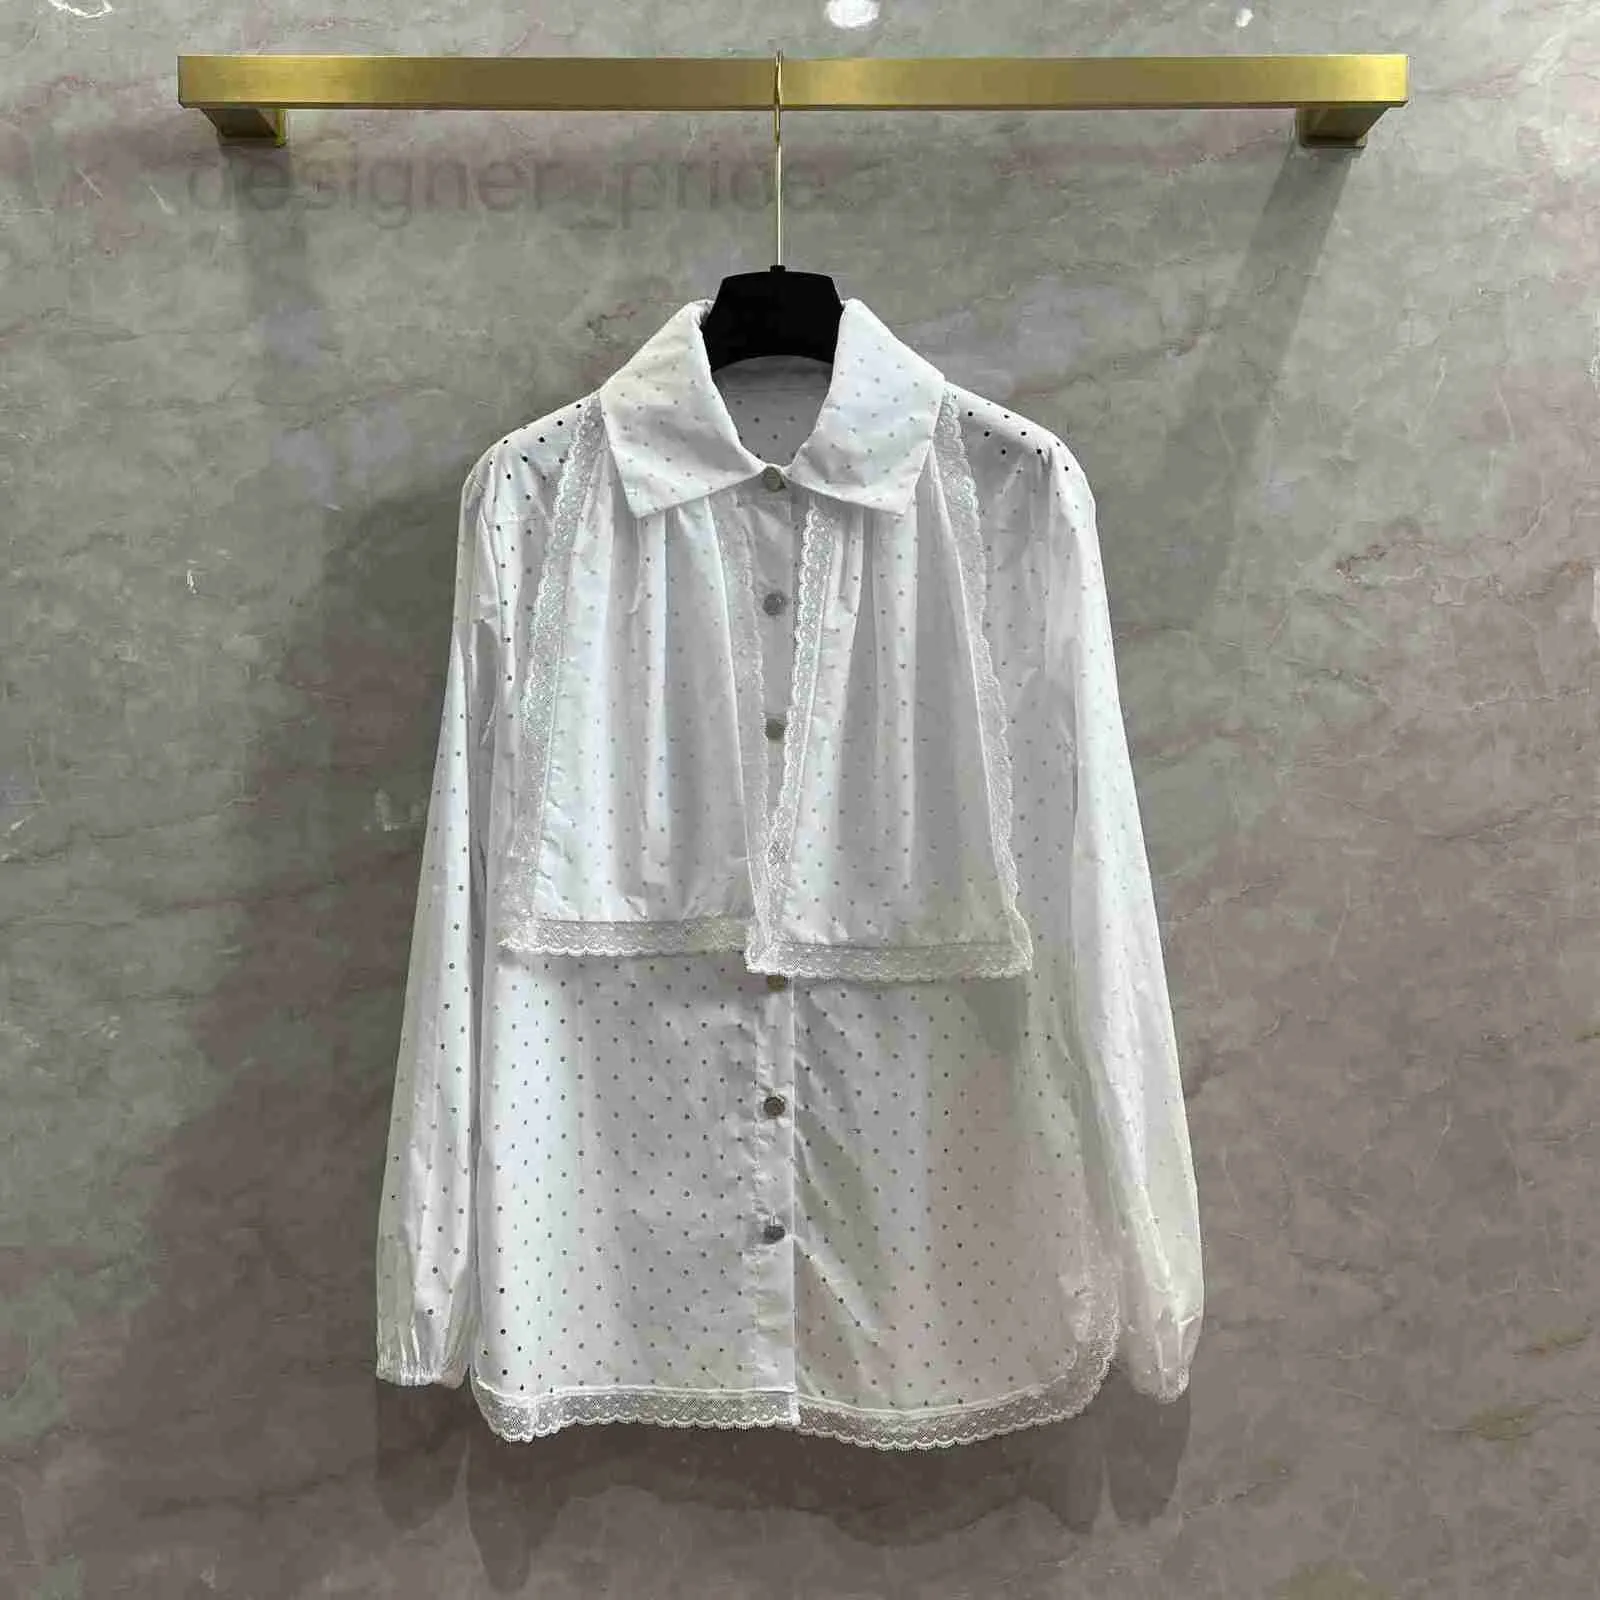 여자 블라우스 셔츠 디자이너 프랑스 세련된 크라우드 디자인 감각, 중공 폴카 도트 셔츠, 여자 레이스 나비 넥타이, 흰색 셔츠 5VJ0